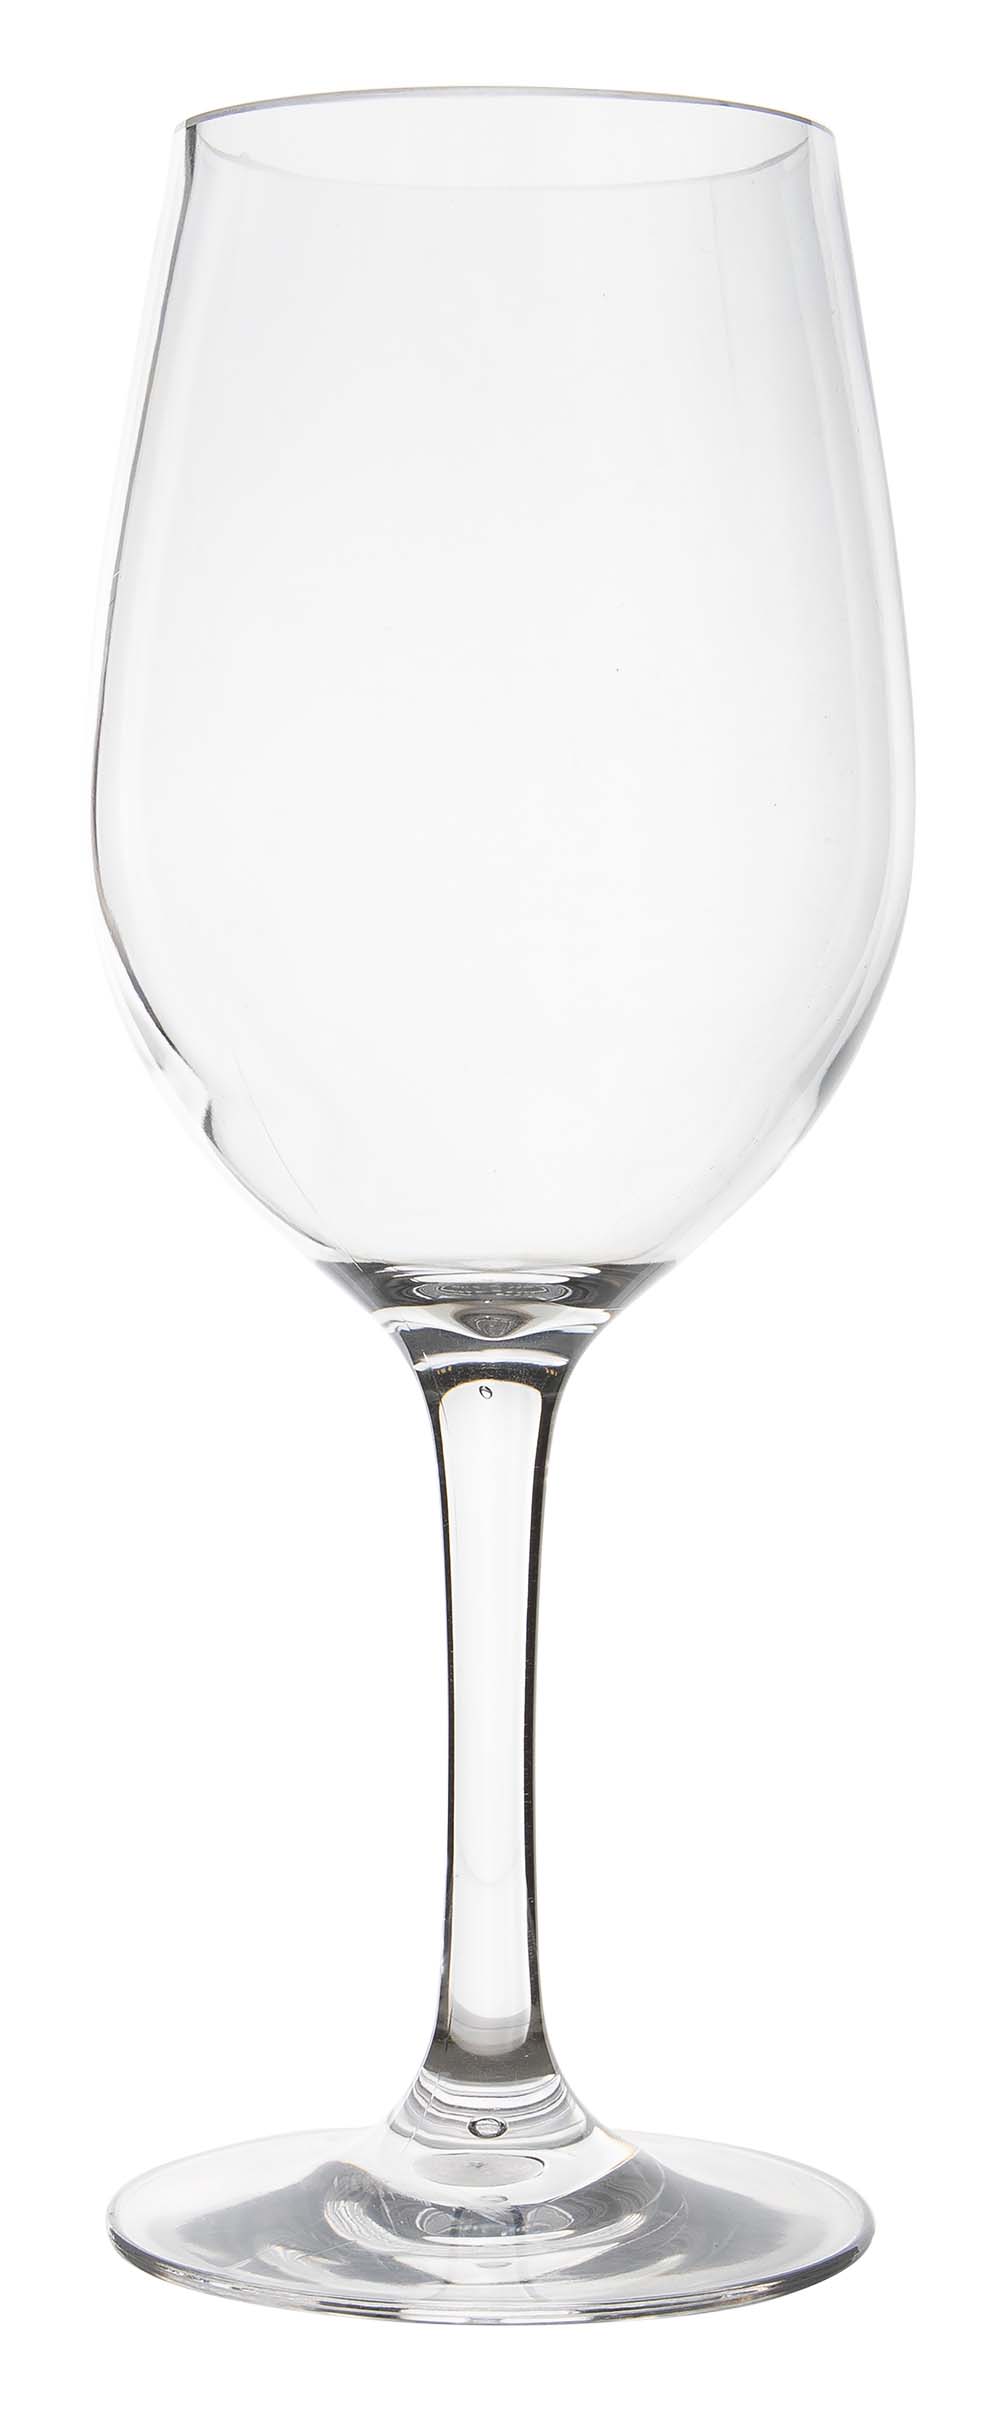 6915150 Gimex - Linea Line - Witte wijnglas - 380 ml - 2 Stuks